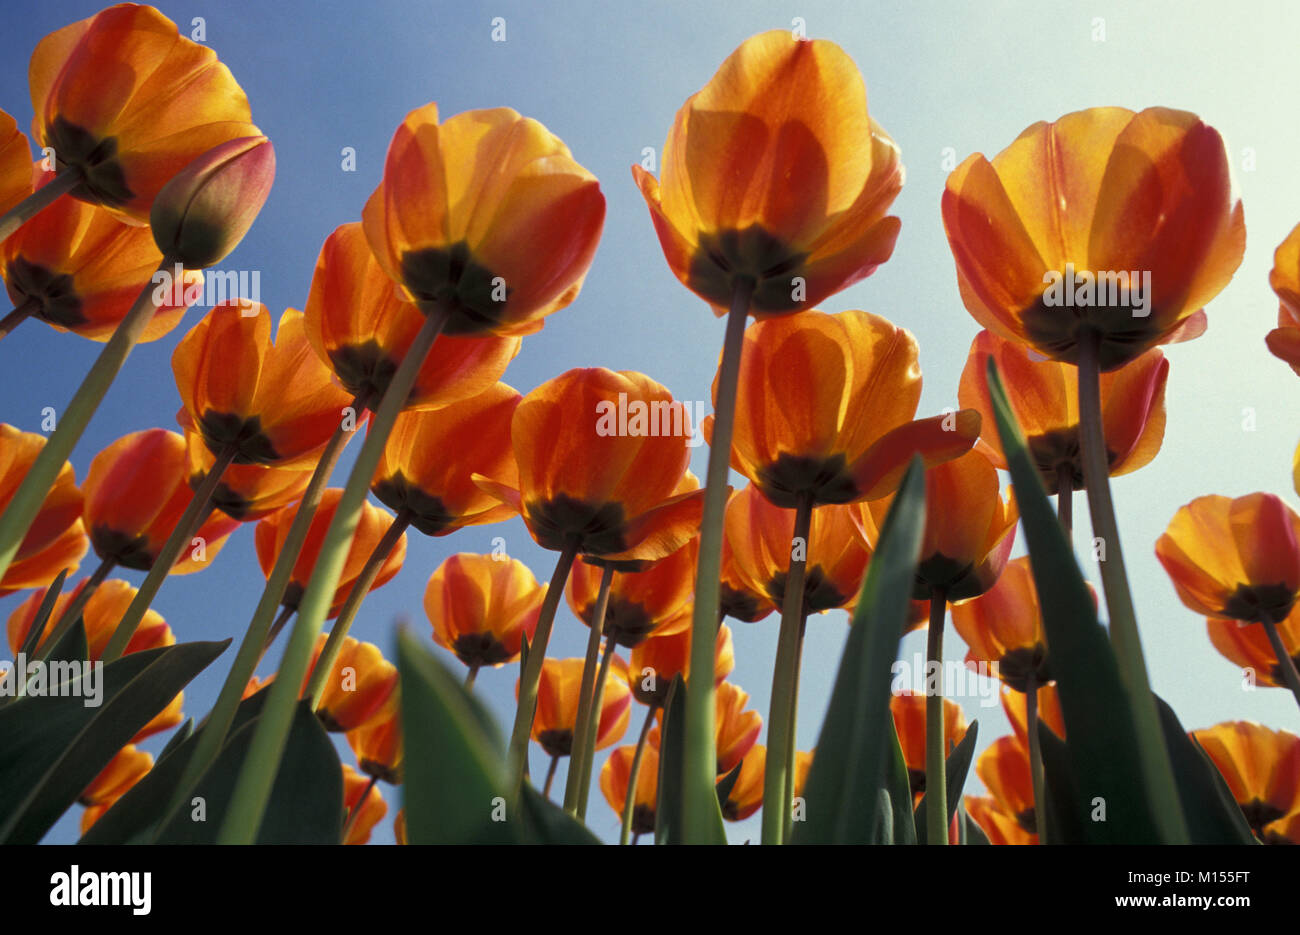 The Netherlands. De Zilk. Tulip fields. Stock Photo